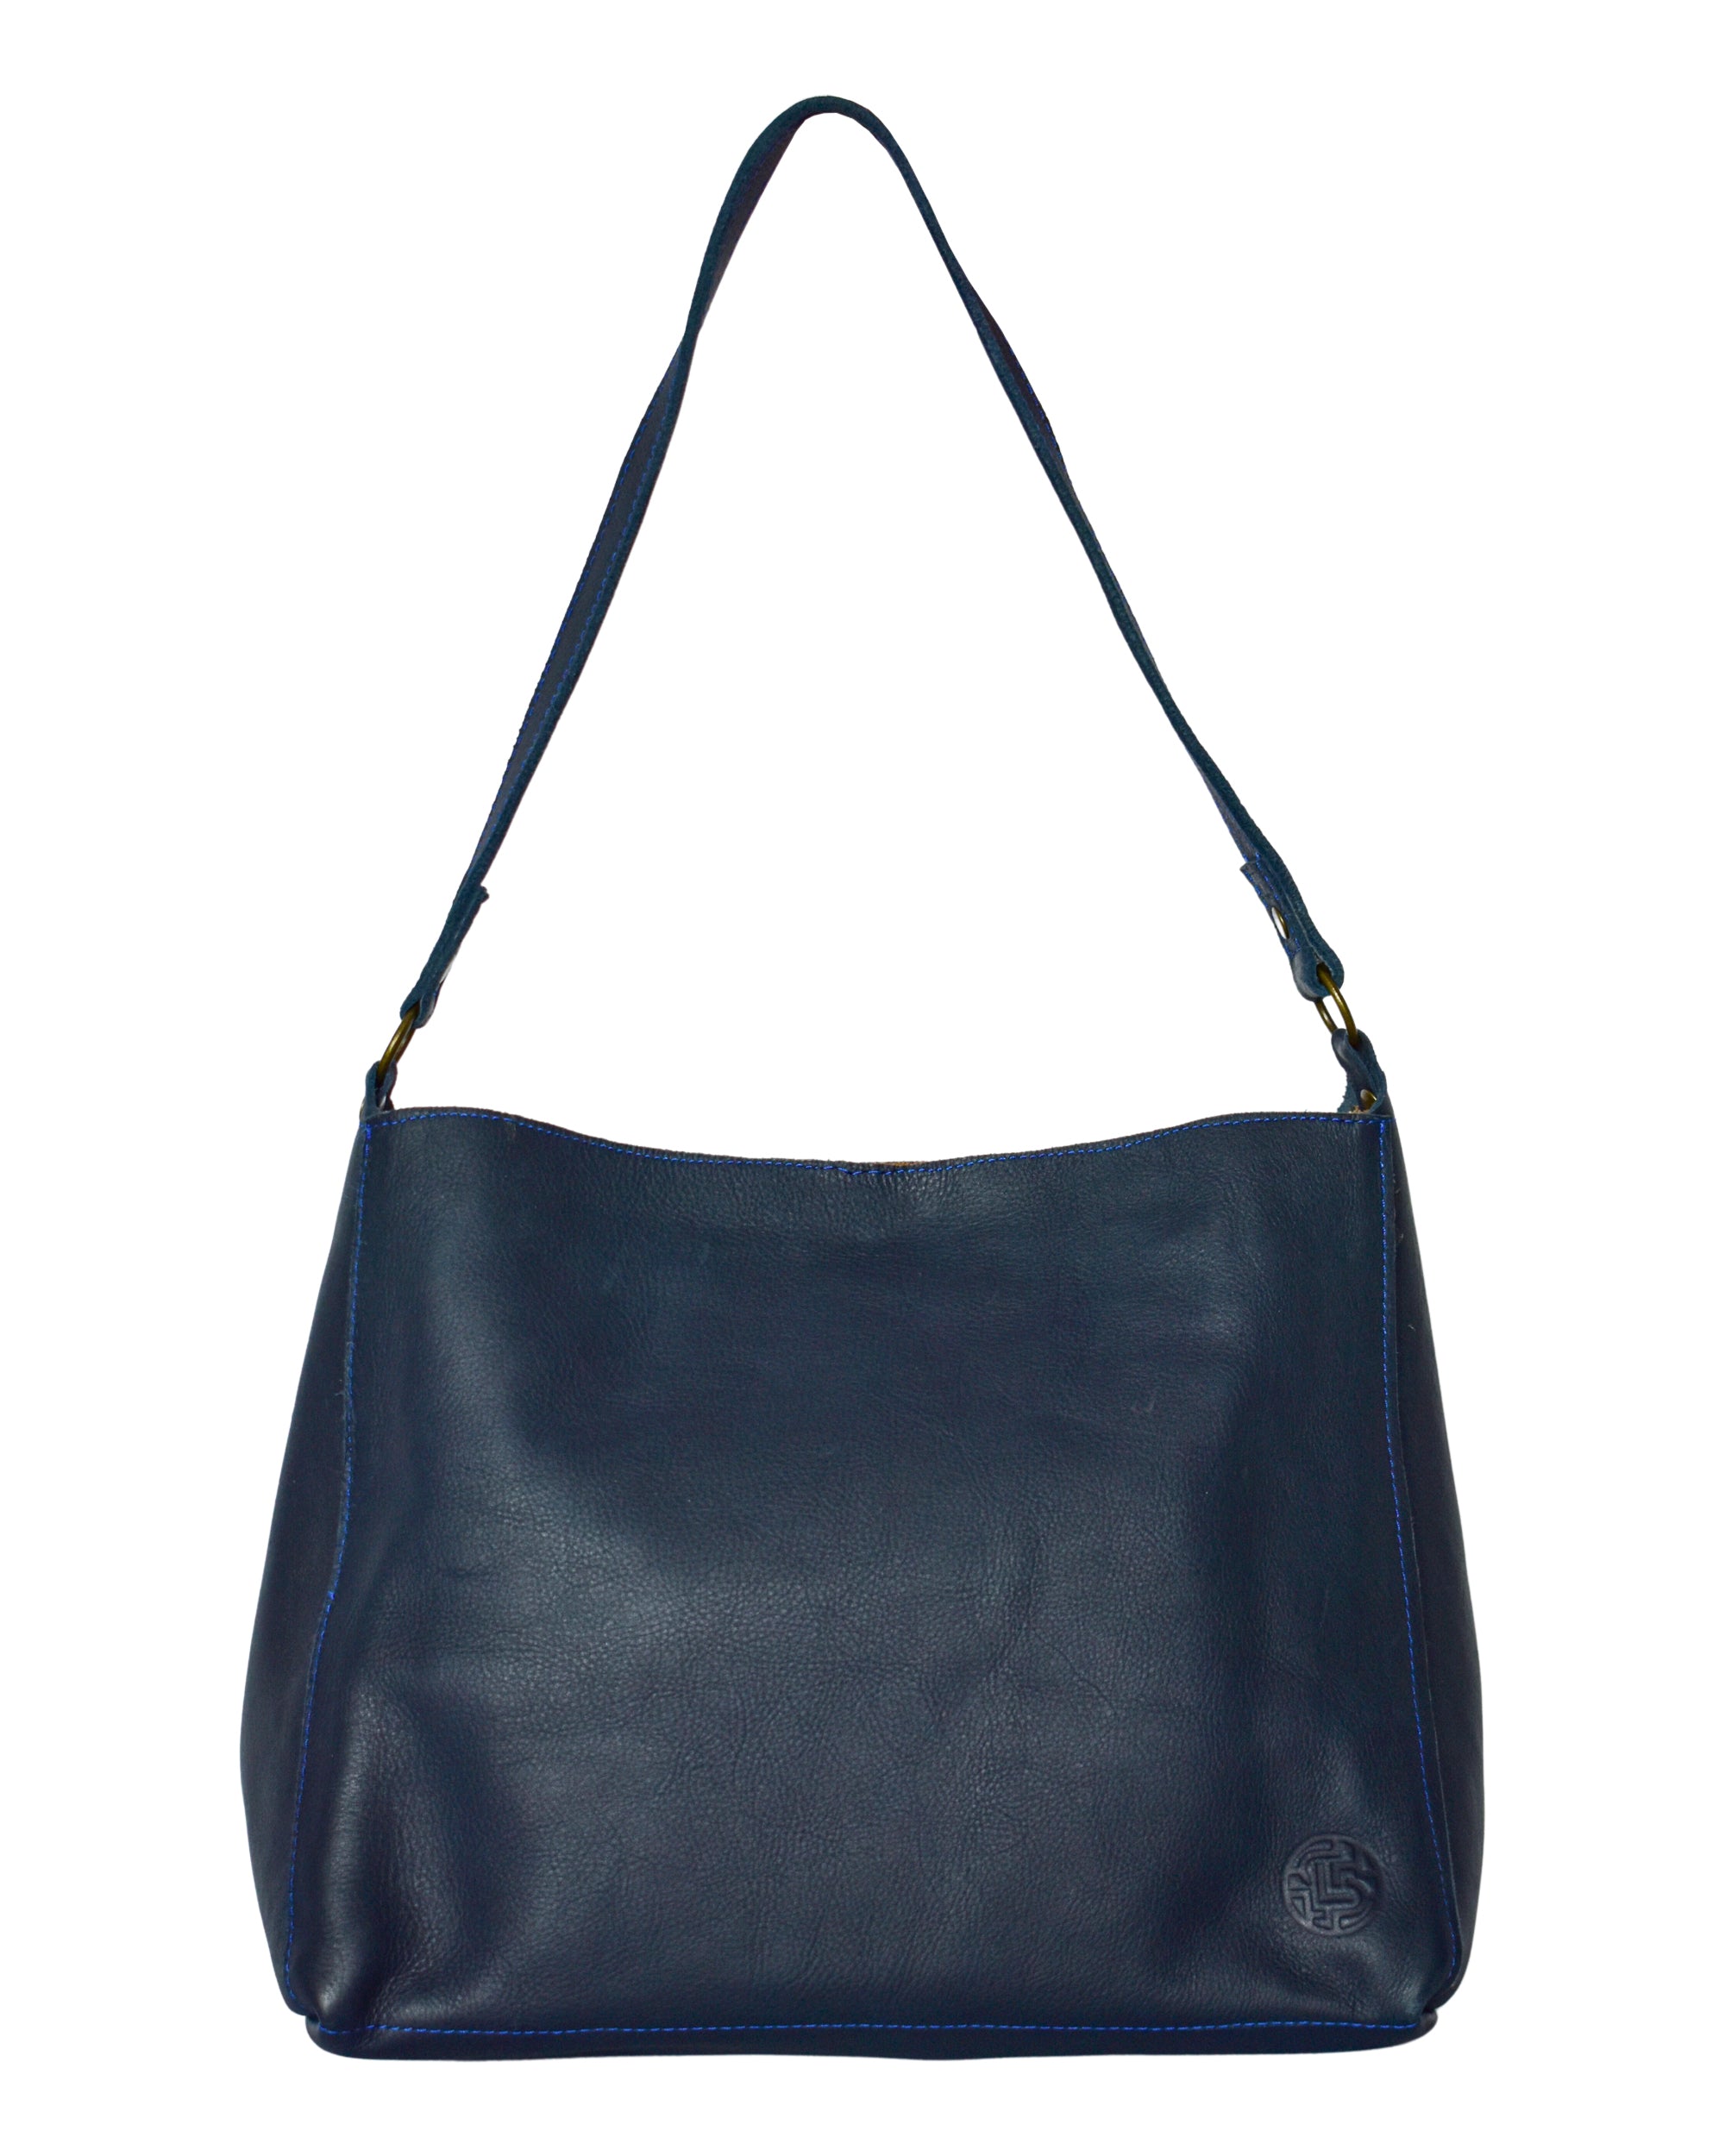 Pier Shoulder Bag in Pebbled Leather - Black – HOBO